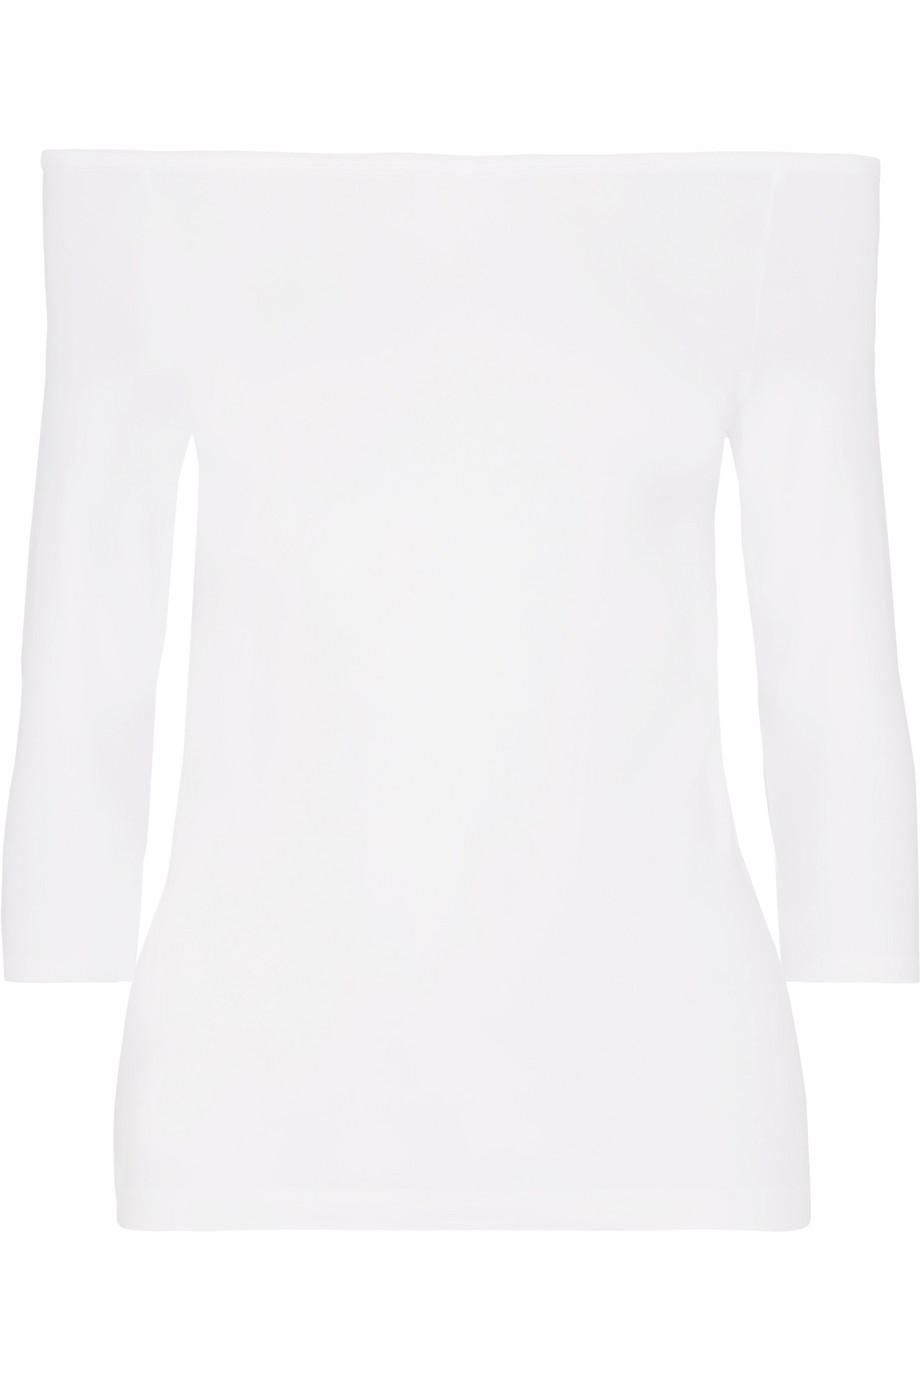 Блузка с открытыми плечами Helmut Lang для женщин